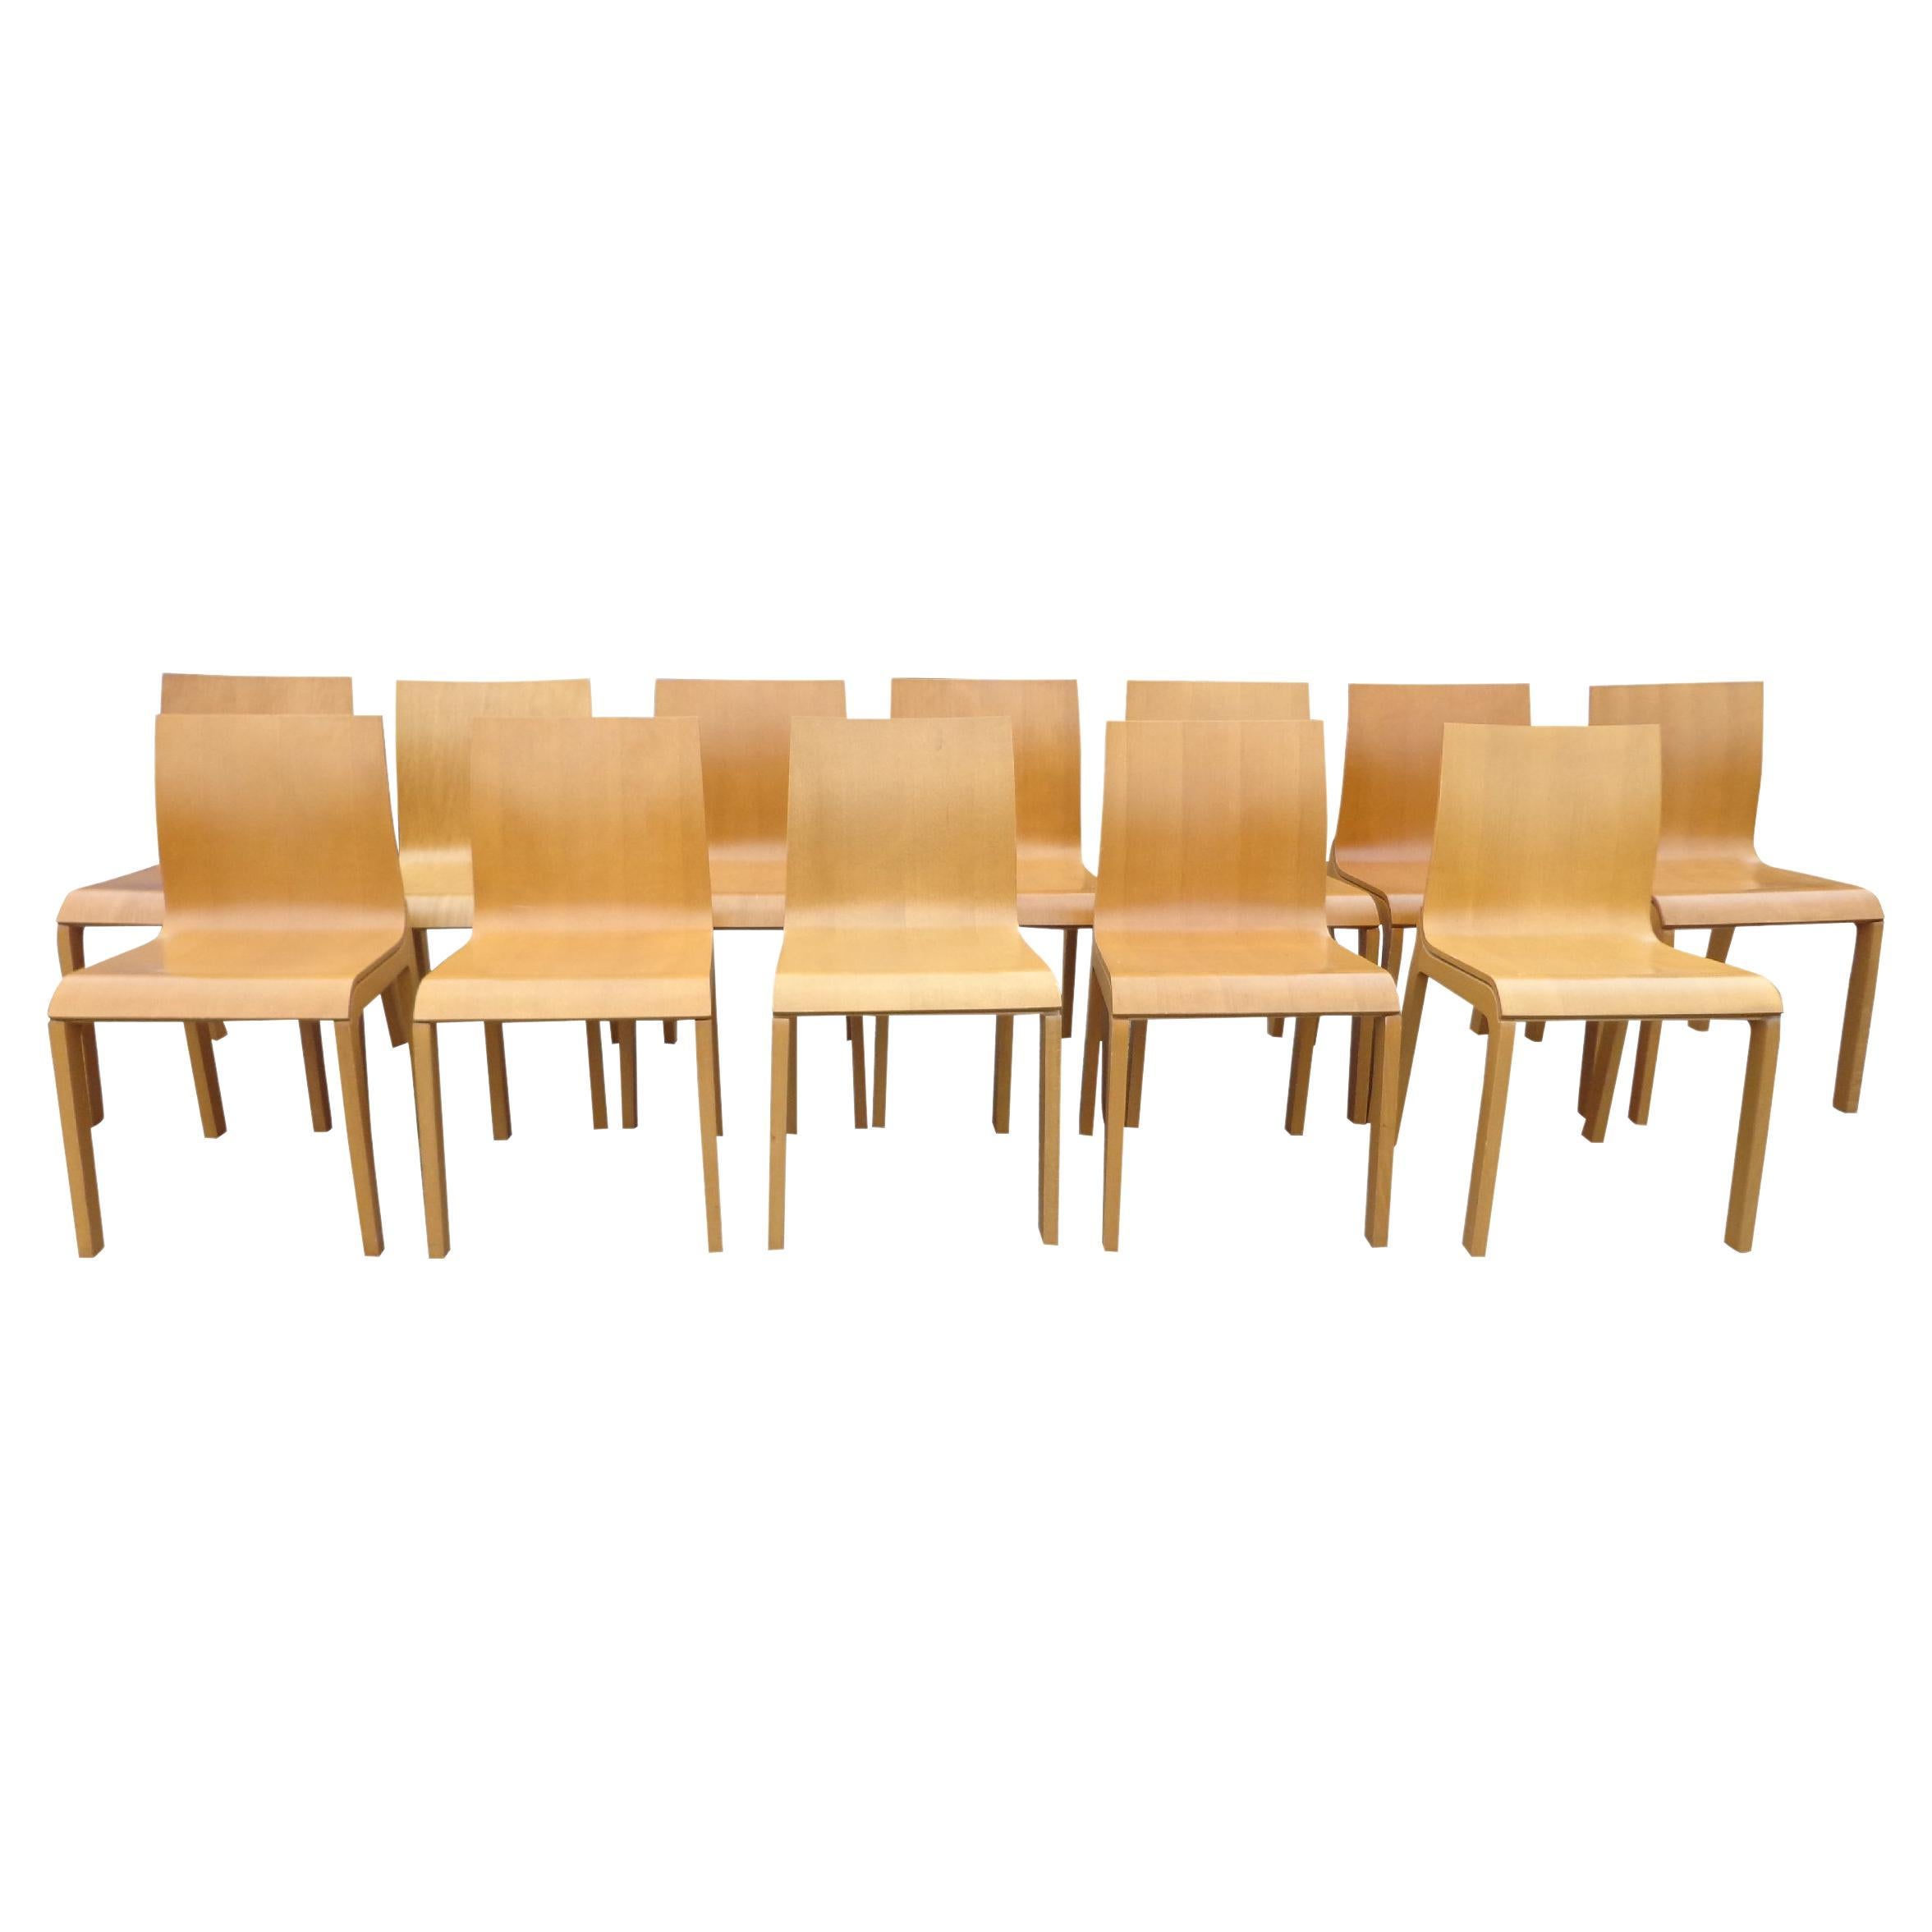 Ensemble de 8 chaises de salle à manger italiennes en forme de scarabée BROSS par Enzo Berti

Conçue par Enzo Berti, la chaise Beetle offre un design simple qui s'harmonise avec n'importe quelle table à manger ou coin petit-déjeuner. Le cadre en